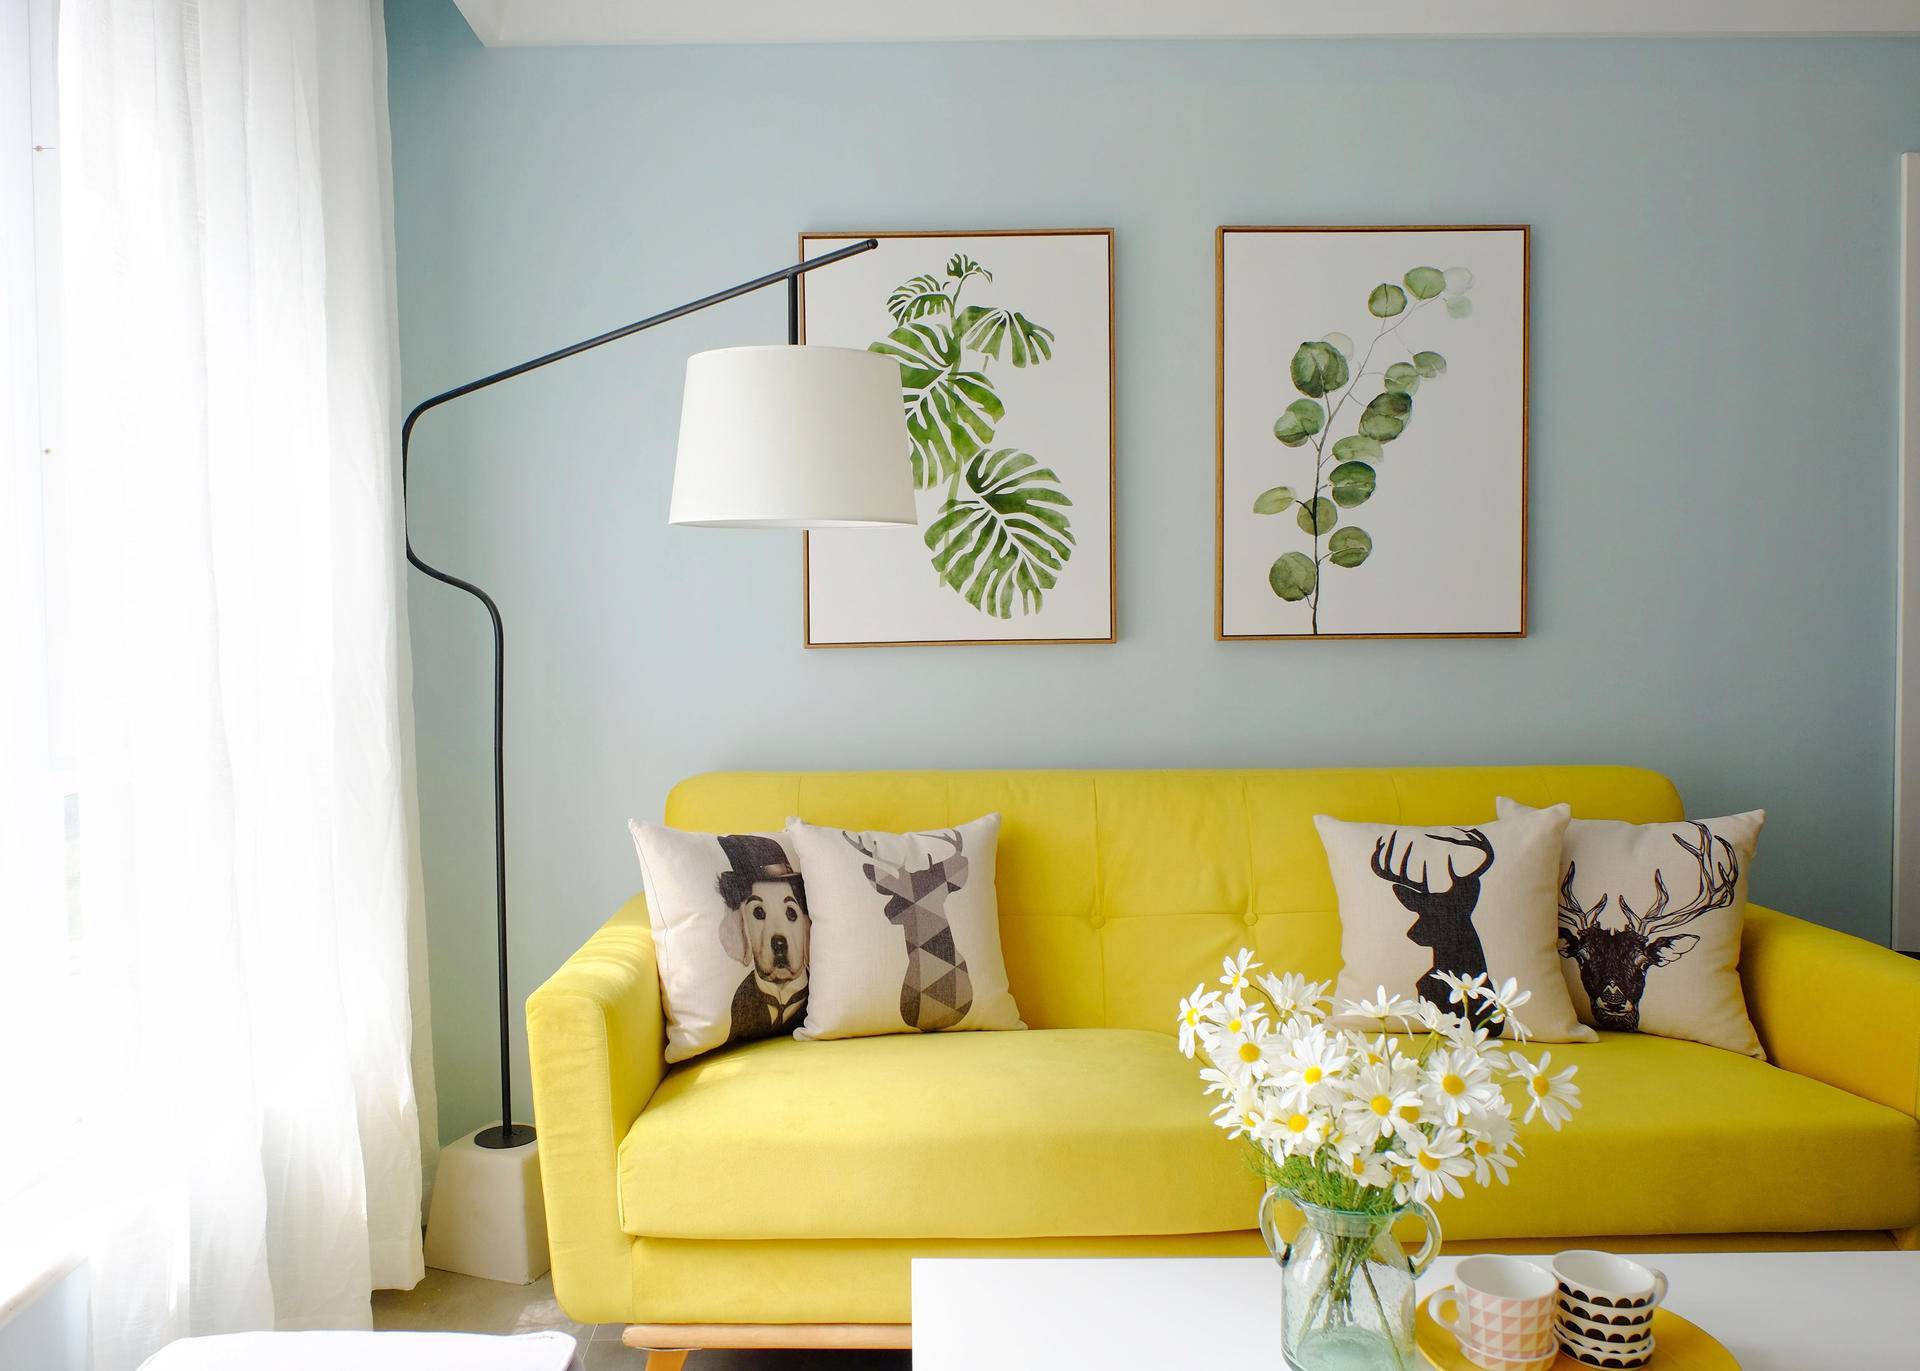 黄皮沙发配色效果图图片